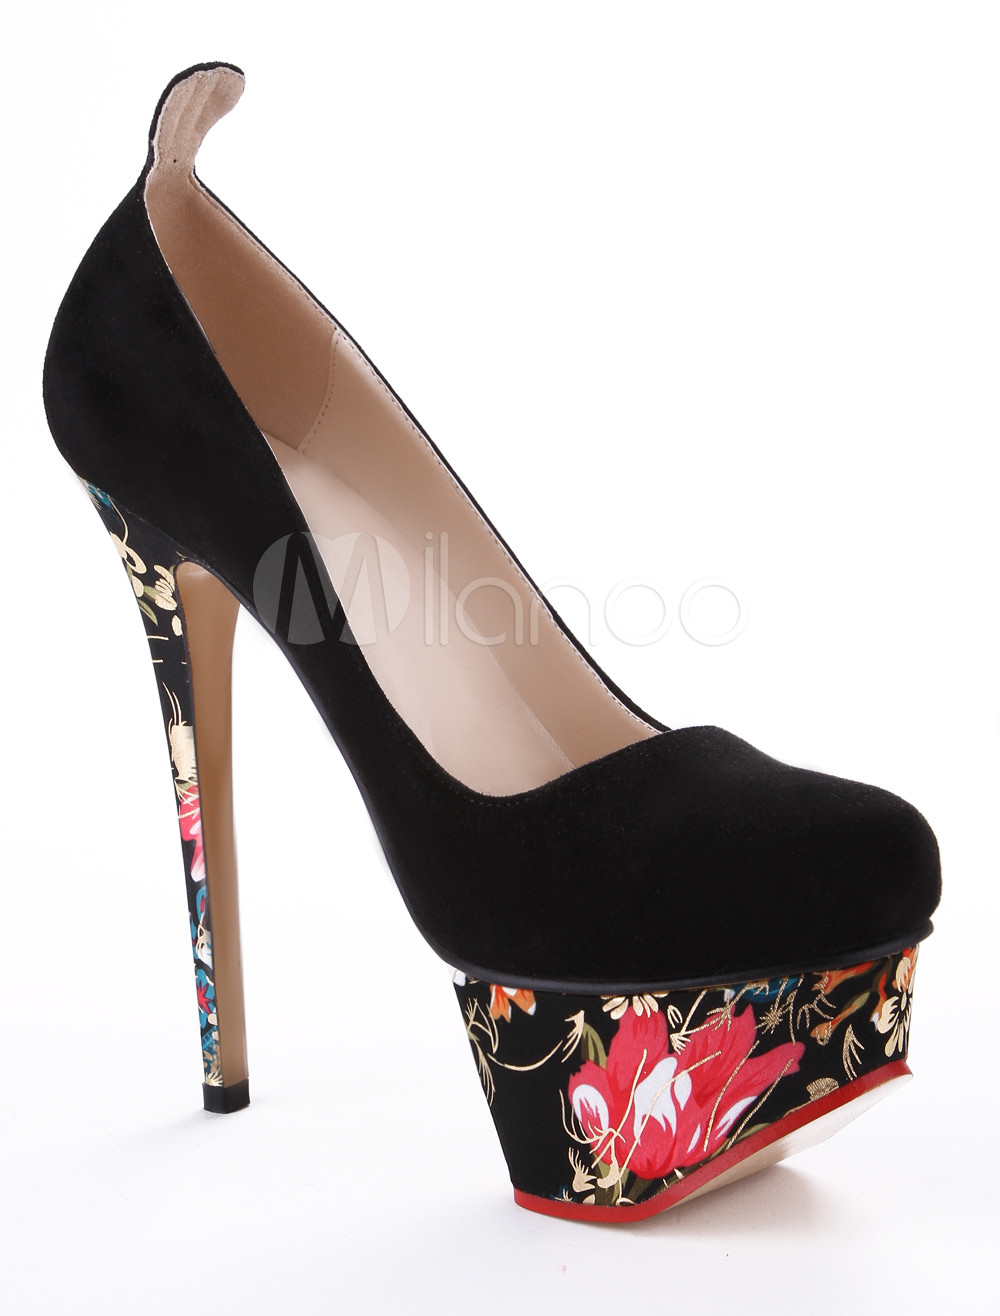 Chic Black Spike Heel Floral Print Women's High Heels - Milanoo.com